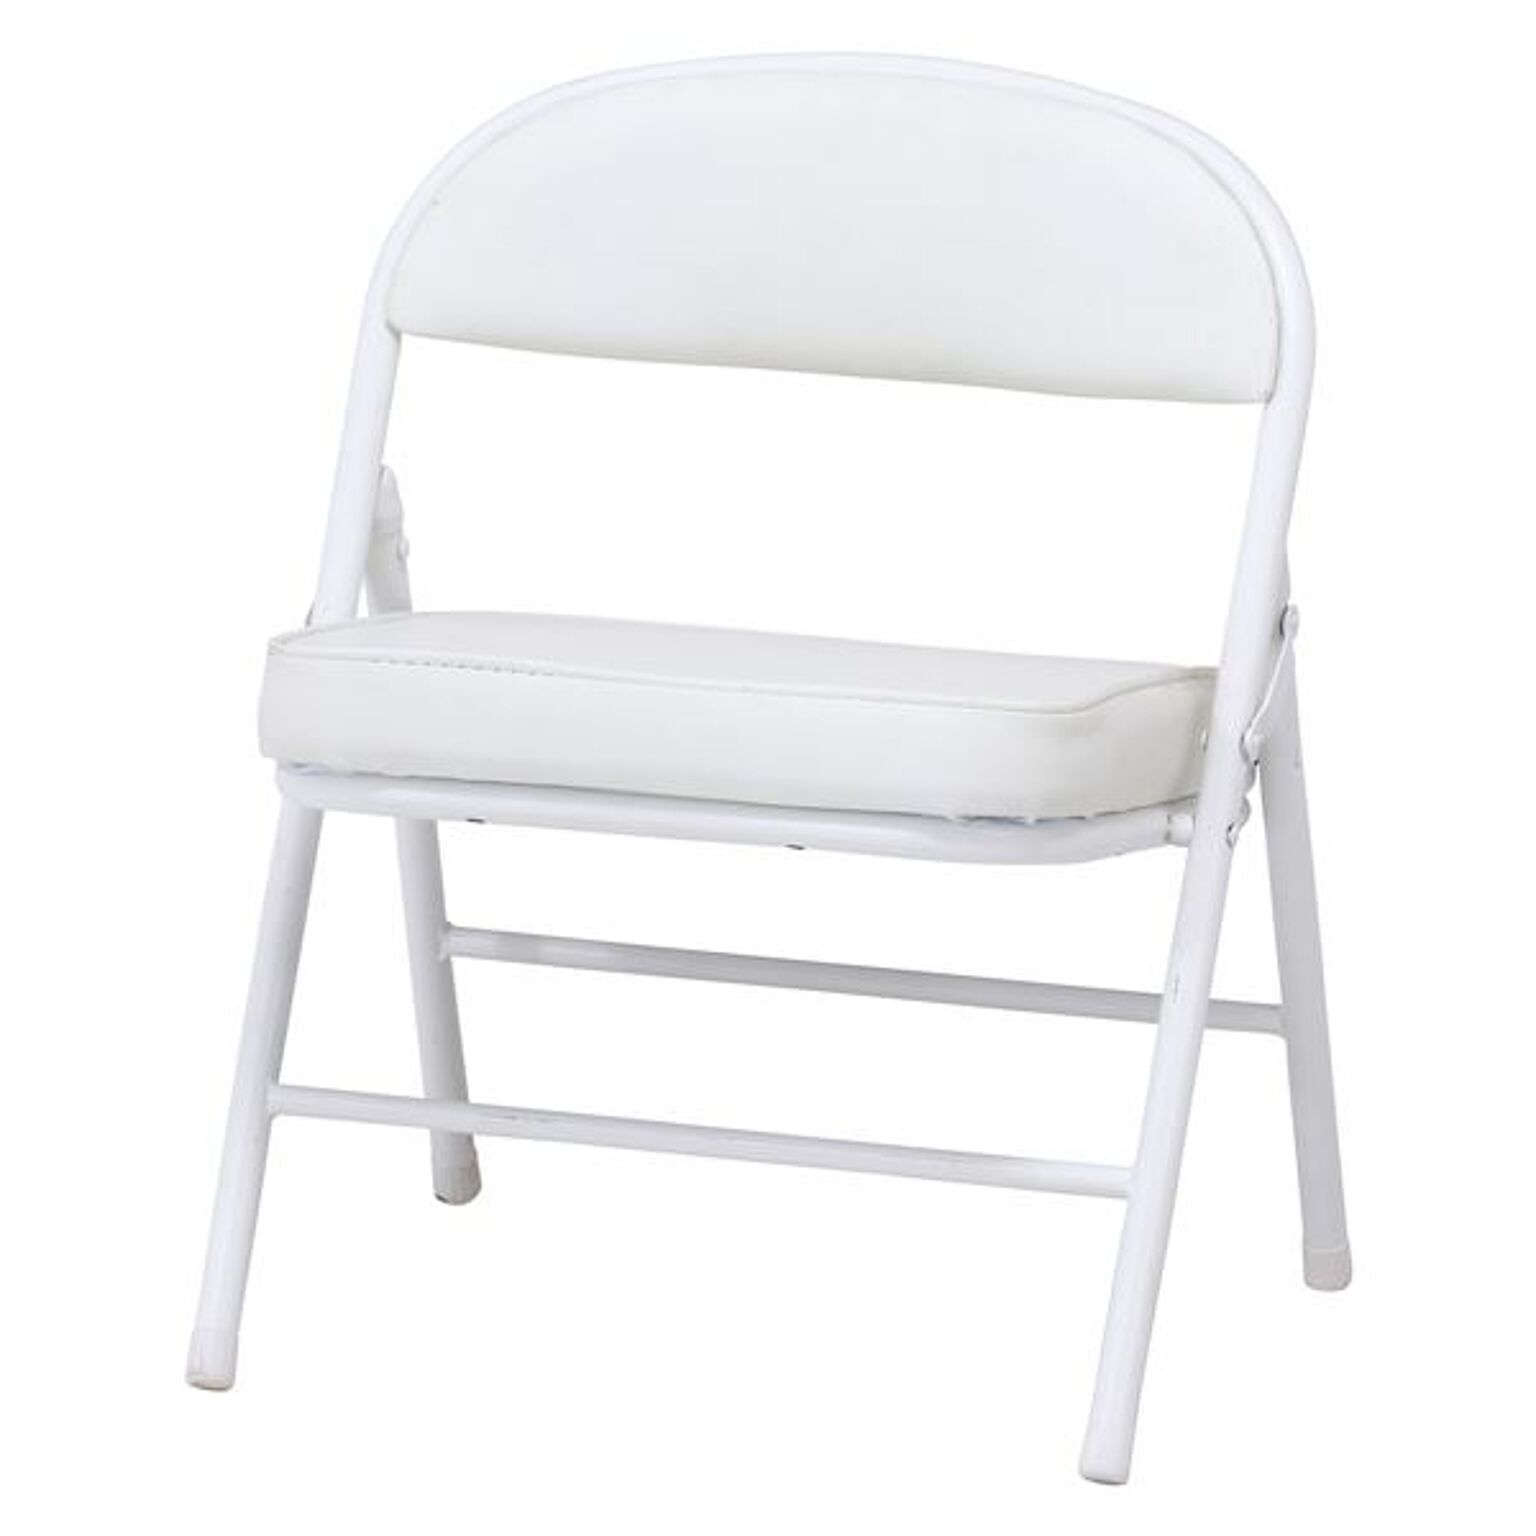 折りたたみ椅子 折り畳み椅子 幅43cm ホワイト 4個セット スチール 折りたたみワイドチェア リビング ダイニング【代引不可】